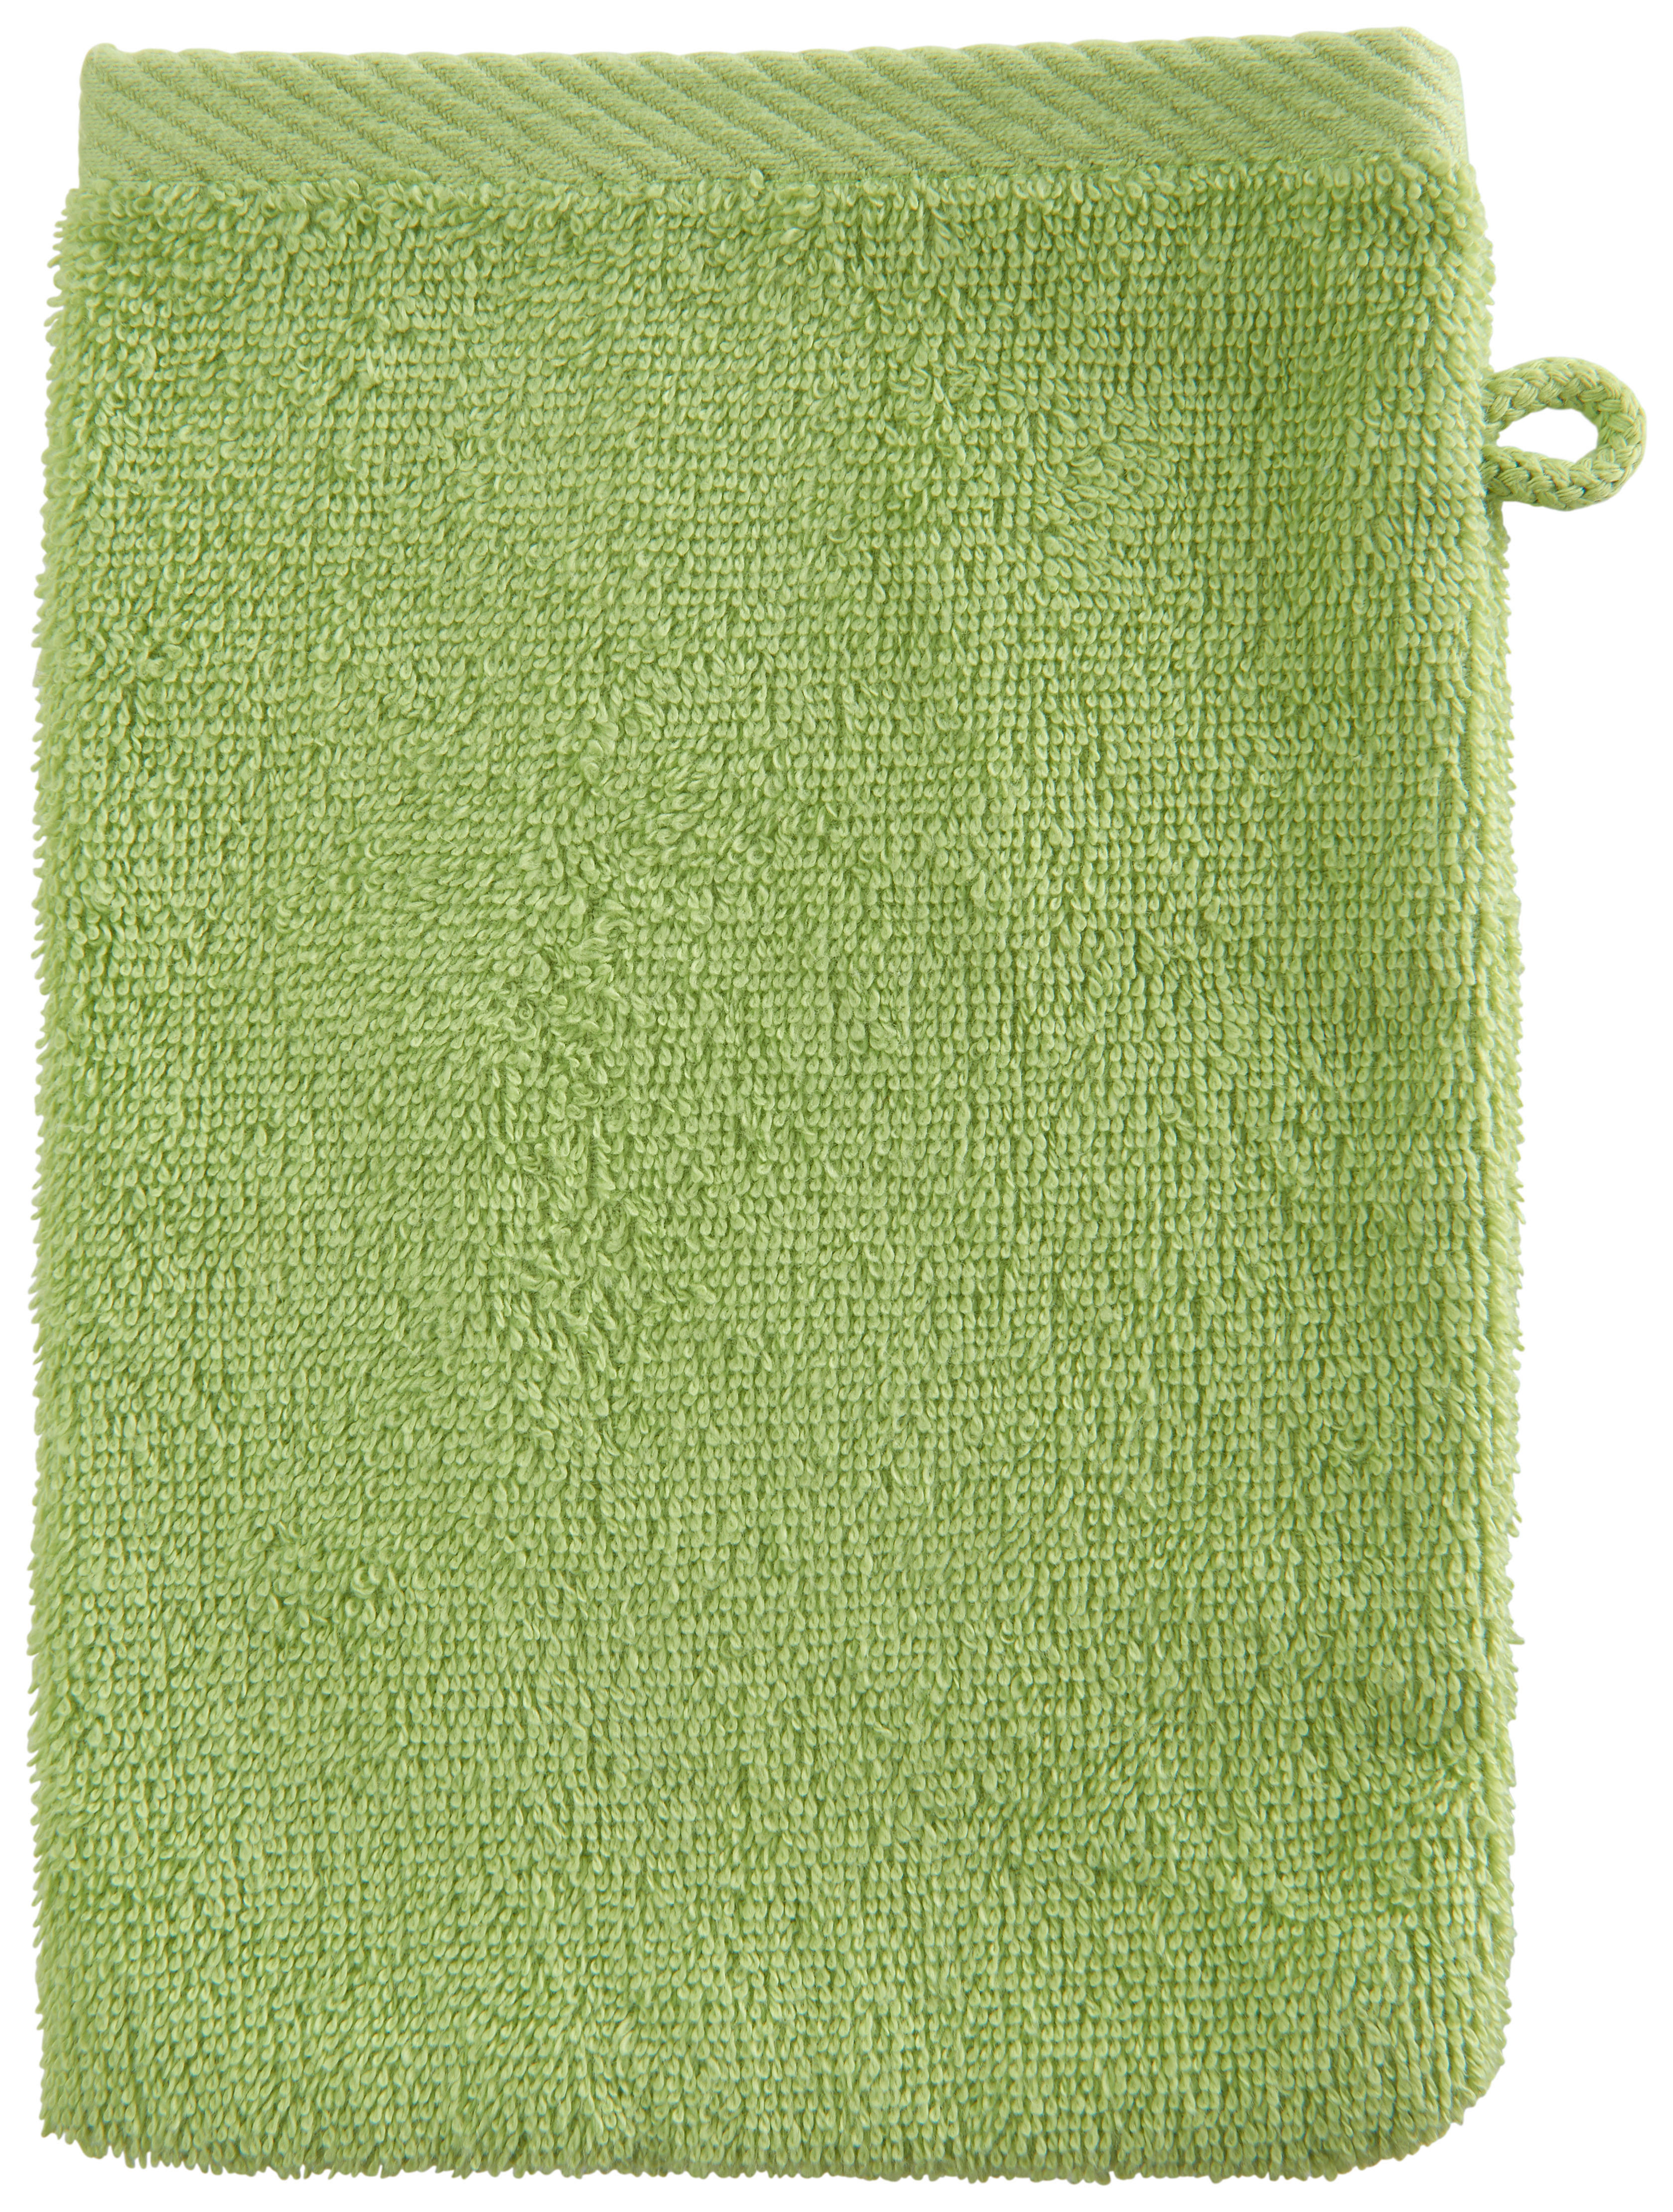 WASCHLAPPEN 16/22 cm Grün  - Grün, KONVENTIONELL, Textil (16/22cm) - Esposa